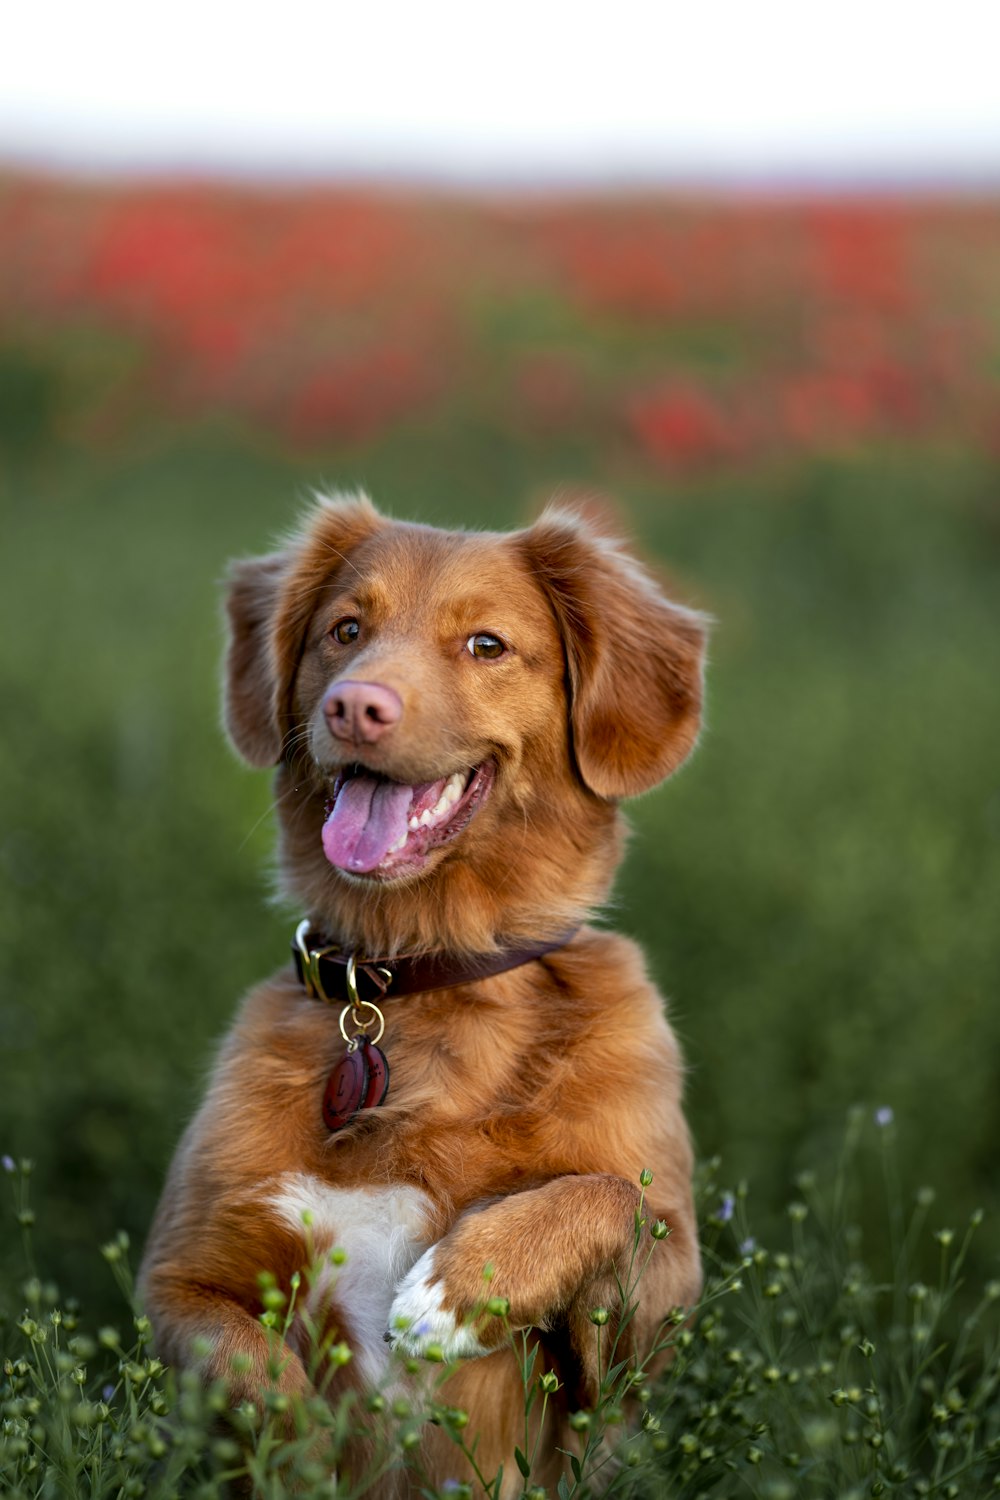 cane a pelo lungo marrone sul campo di erba verde durante il giorno